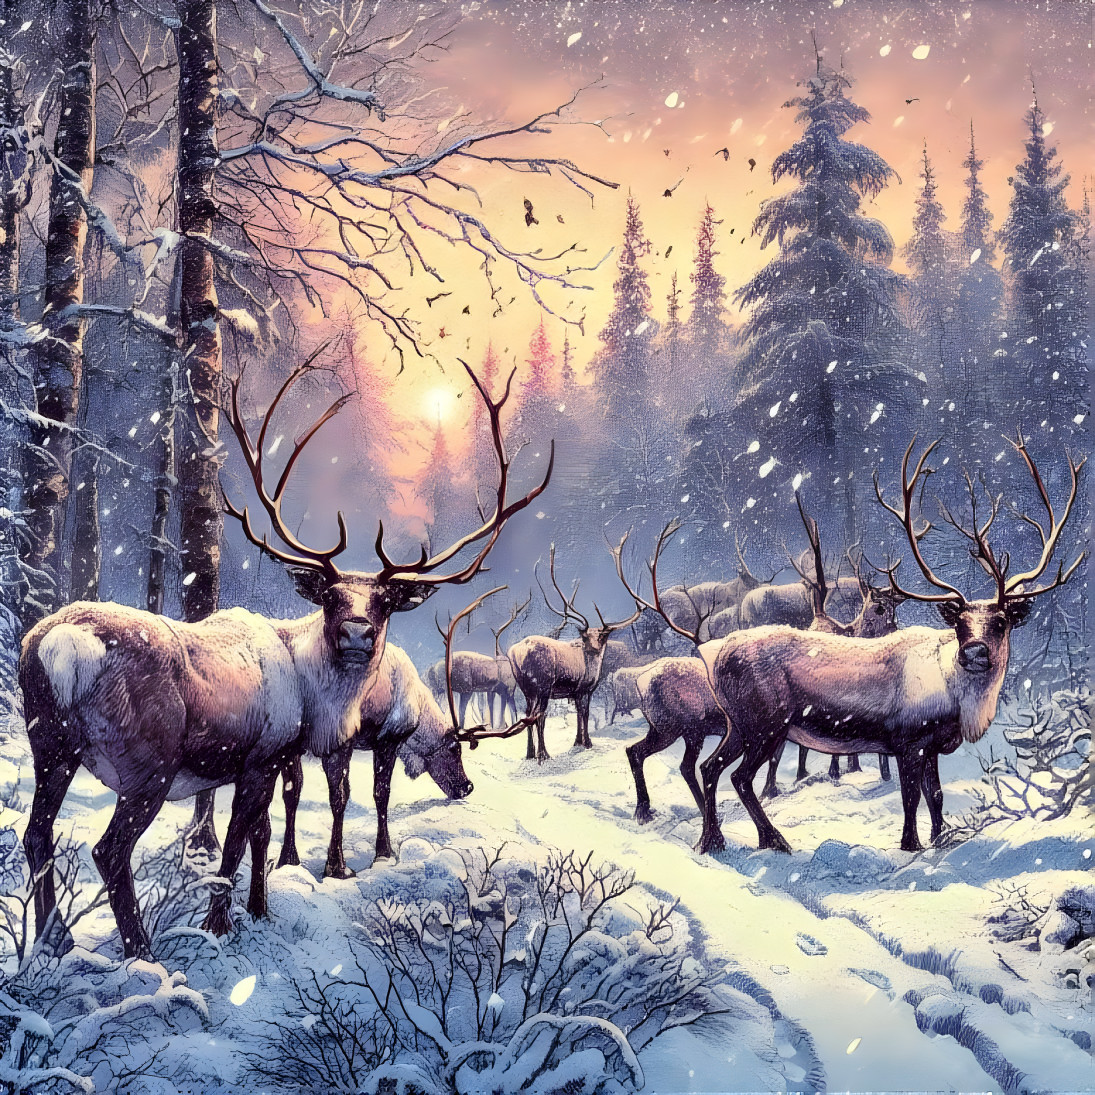 Reindeers or Caribous